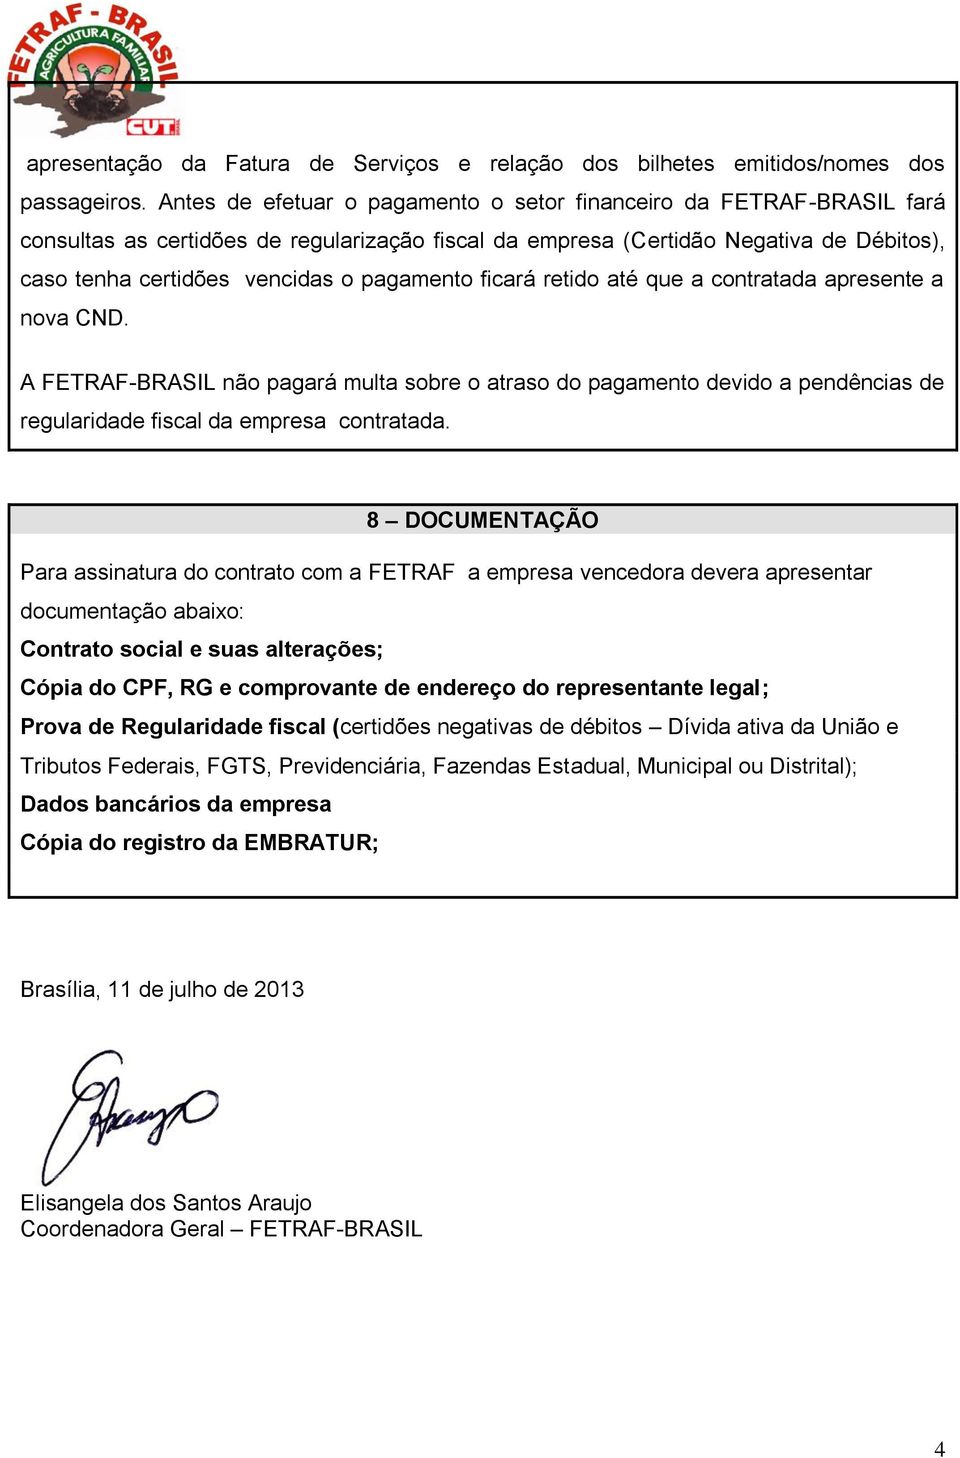 pagamento ficará retido até que a contratada apresente a nova CND. A FETRAF-BRASIL não pagará multa sobre o atraso do pagamento devido a pendências de regularidade fiscal da empresa contratada.